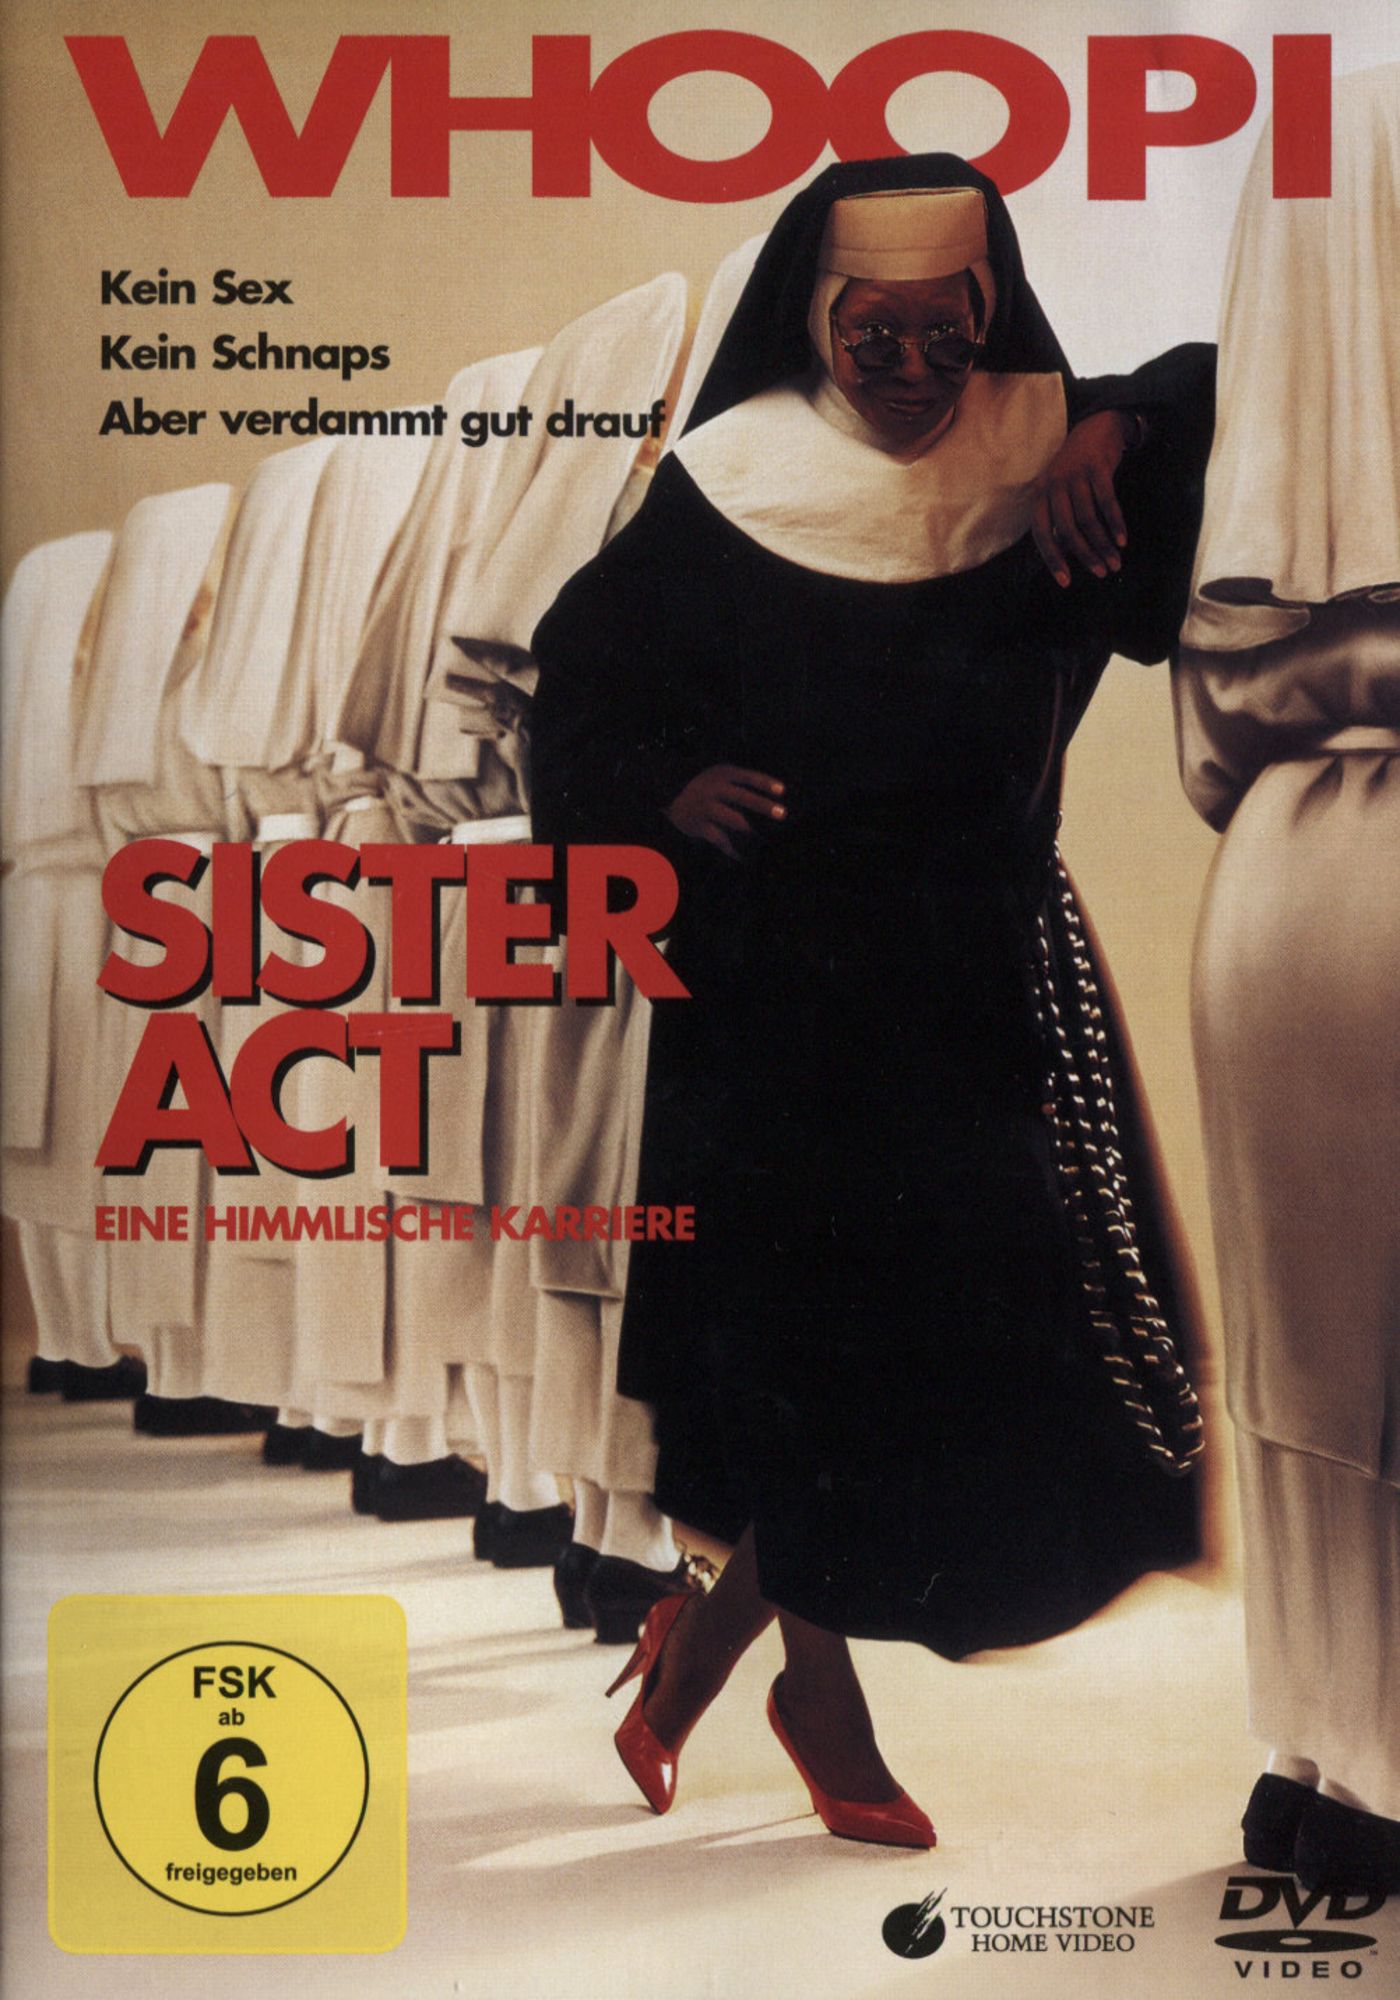 Sister Act 1 - Eine himmlische Karriere von Emile Ardolino